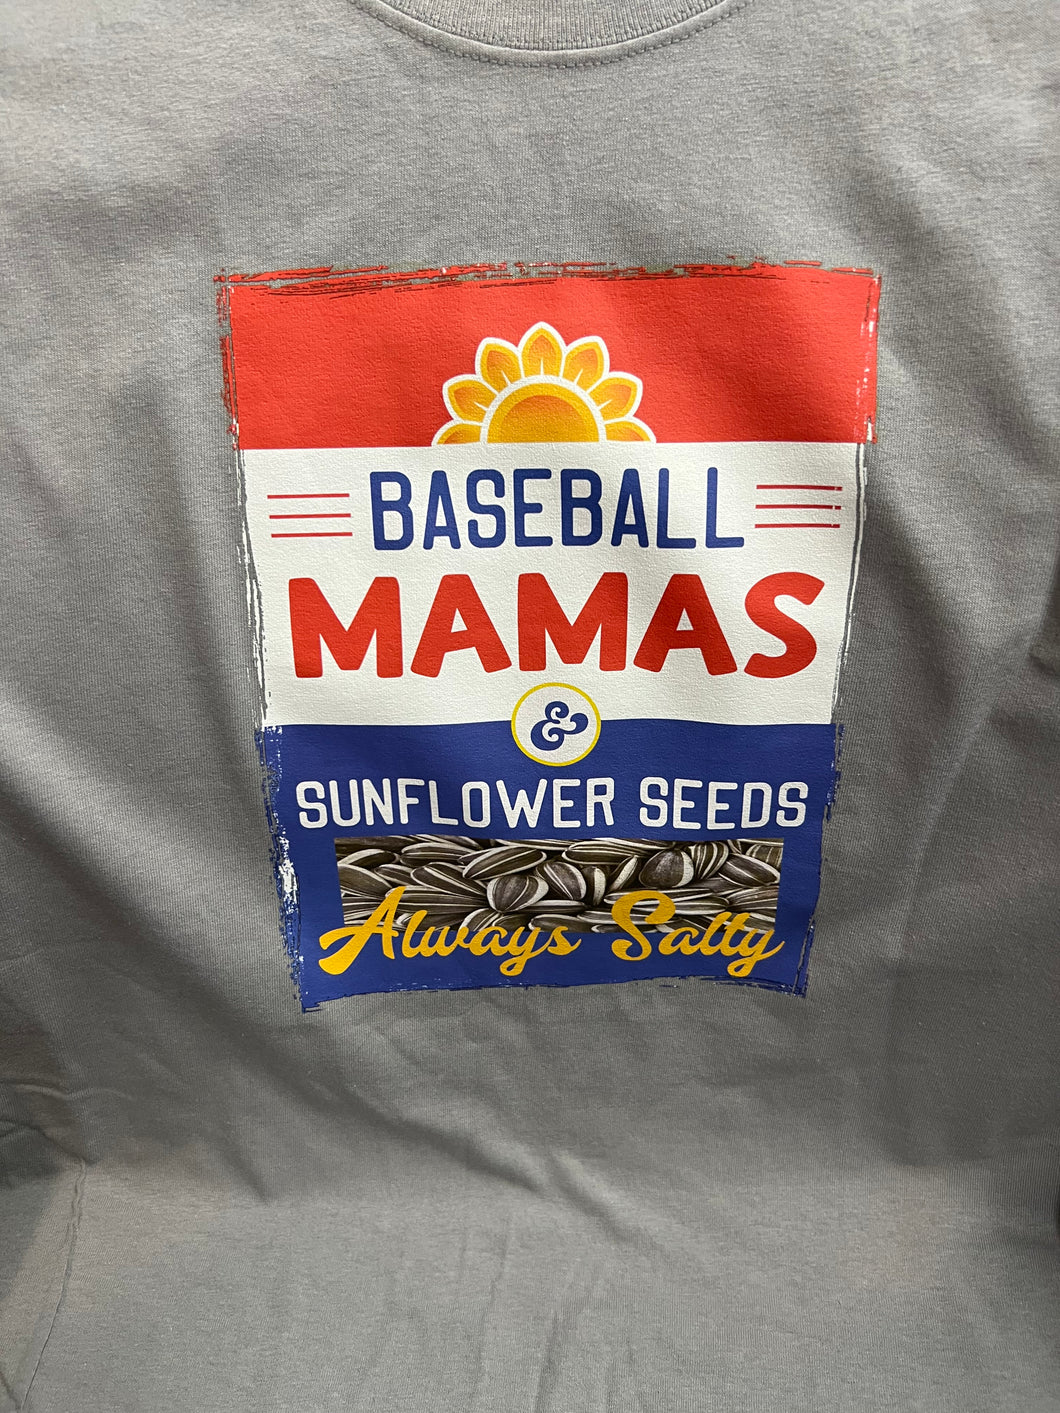 Baseball Sunflower Seeds Shirt - Size Large